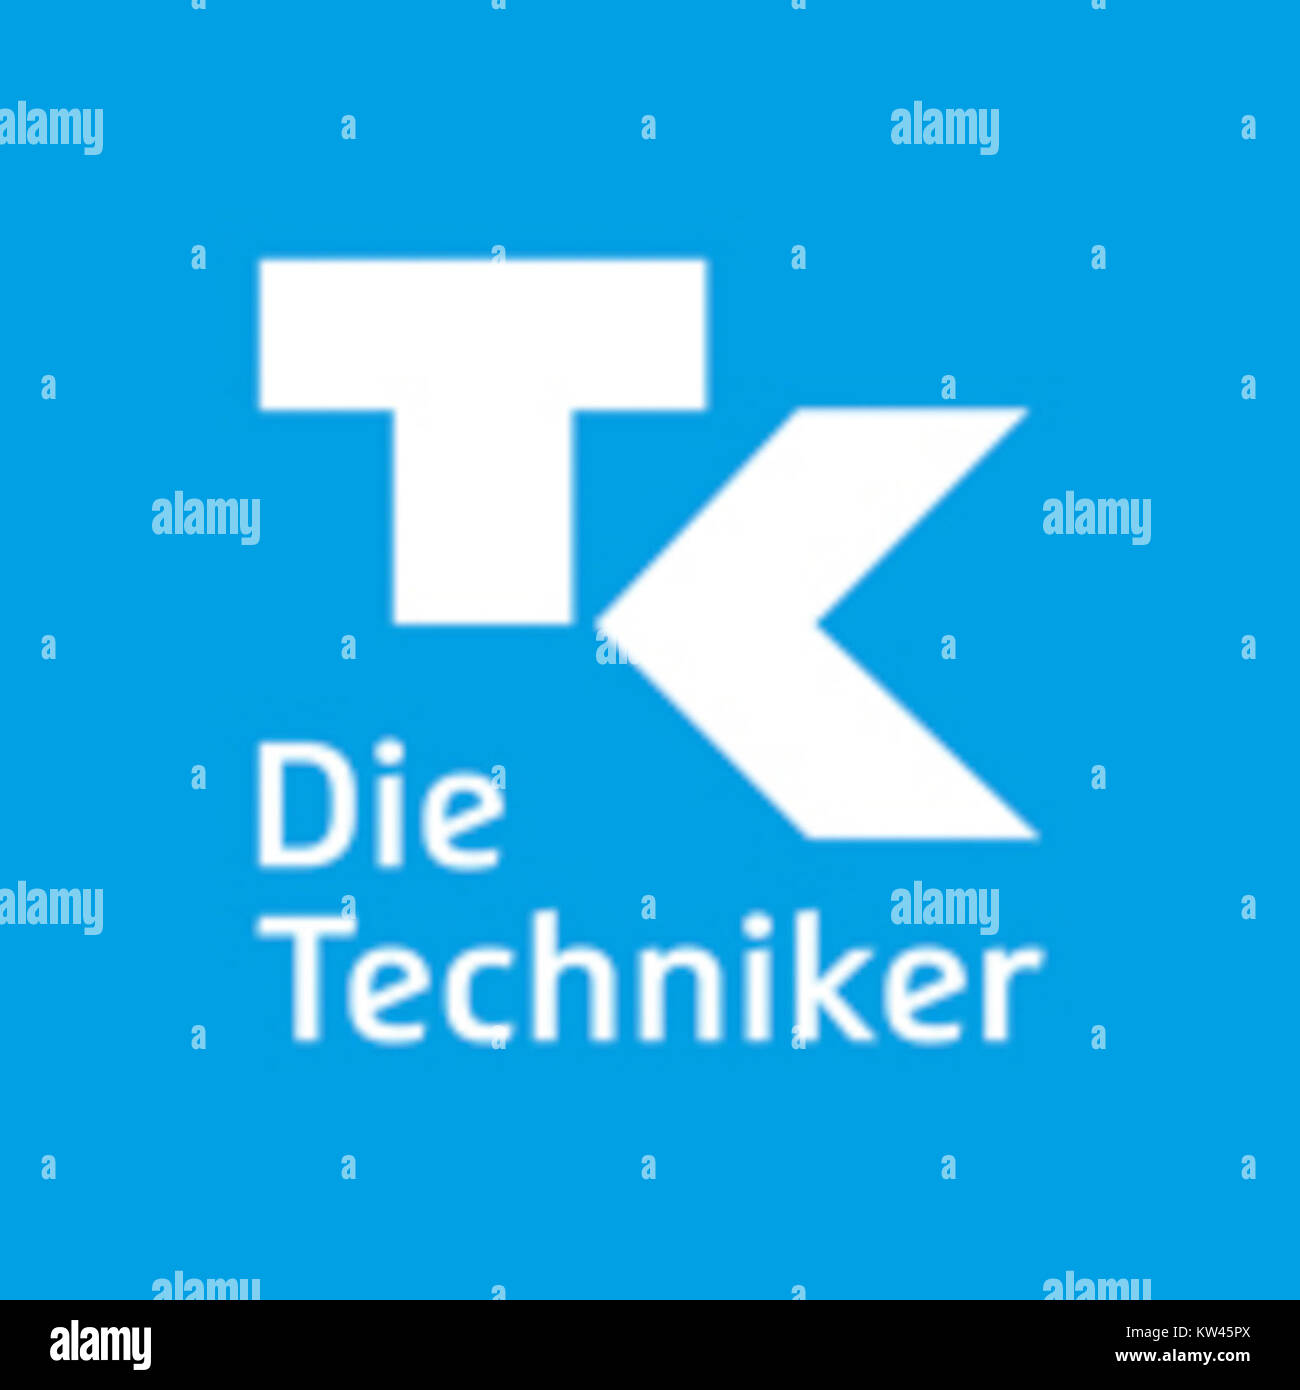 Techniker Krankenkasse Logo 2016 Stock Photo